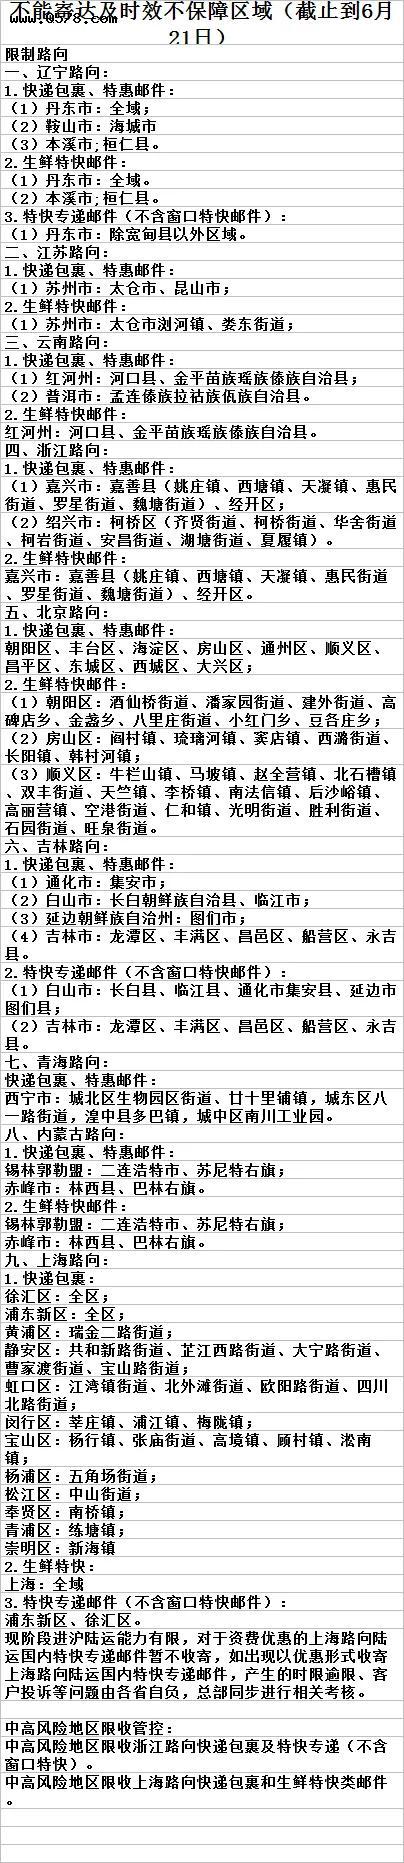 中国邮政6日21日最新公布全国快递暂停收寄及受影响地区